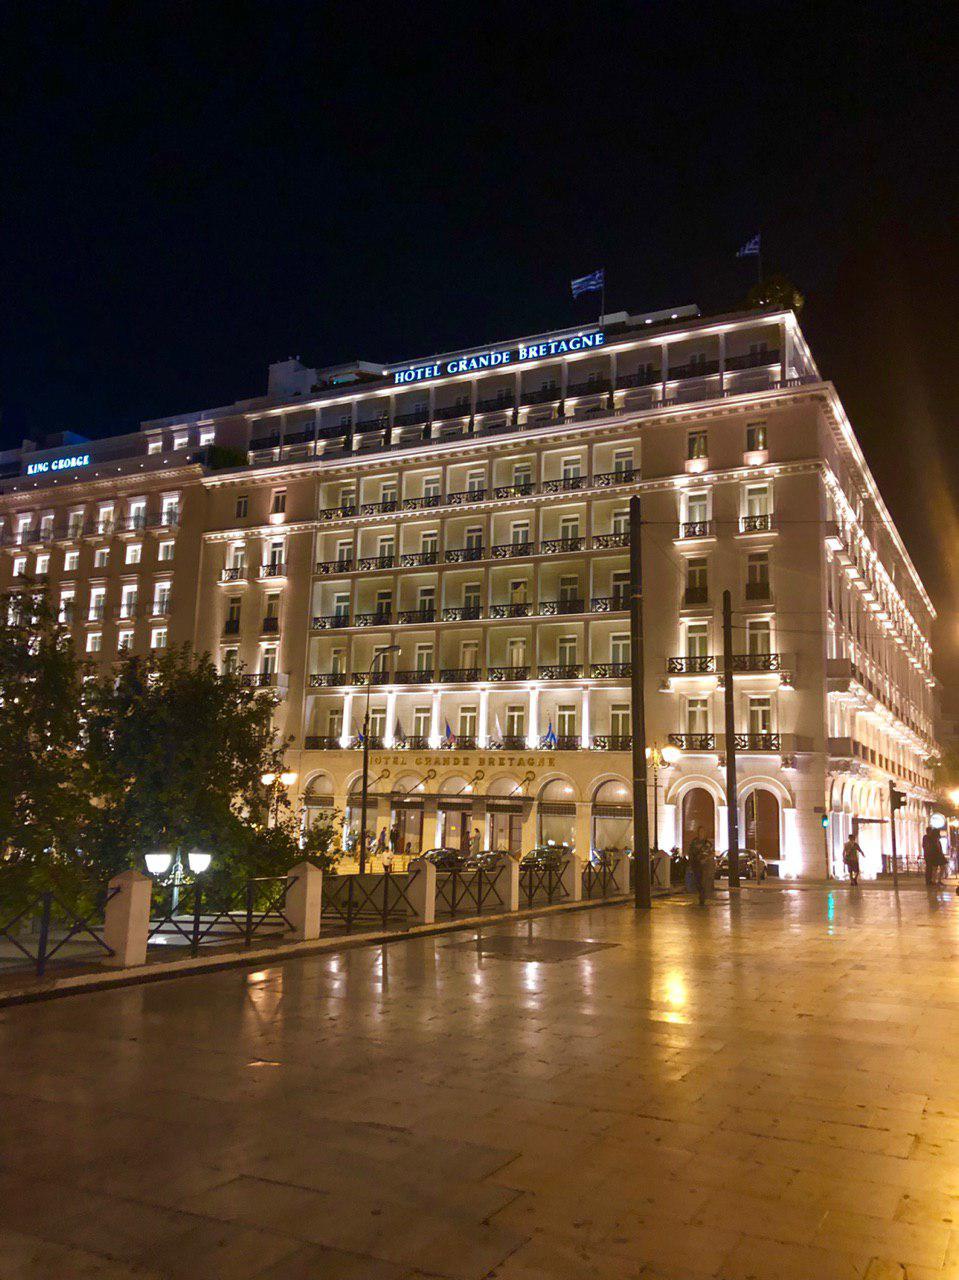 هتل بریتانیای کبیر - میدان سیداقما -syntagma